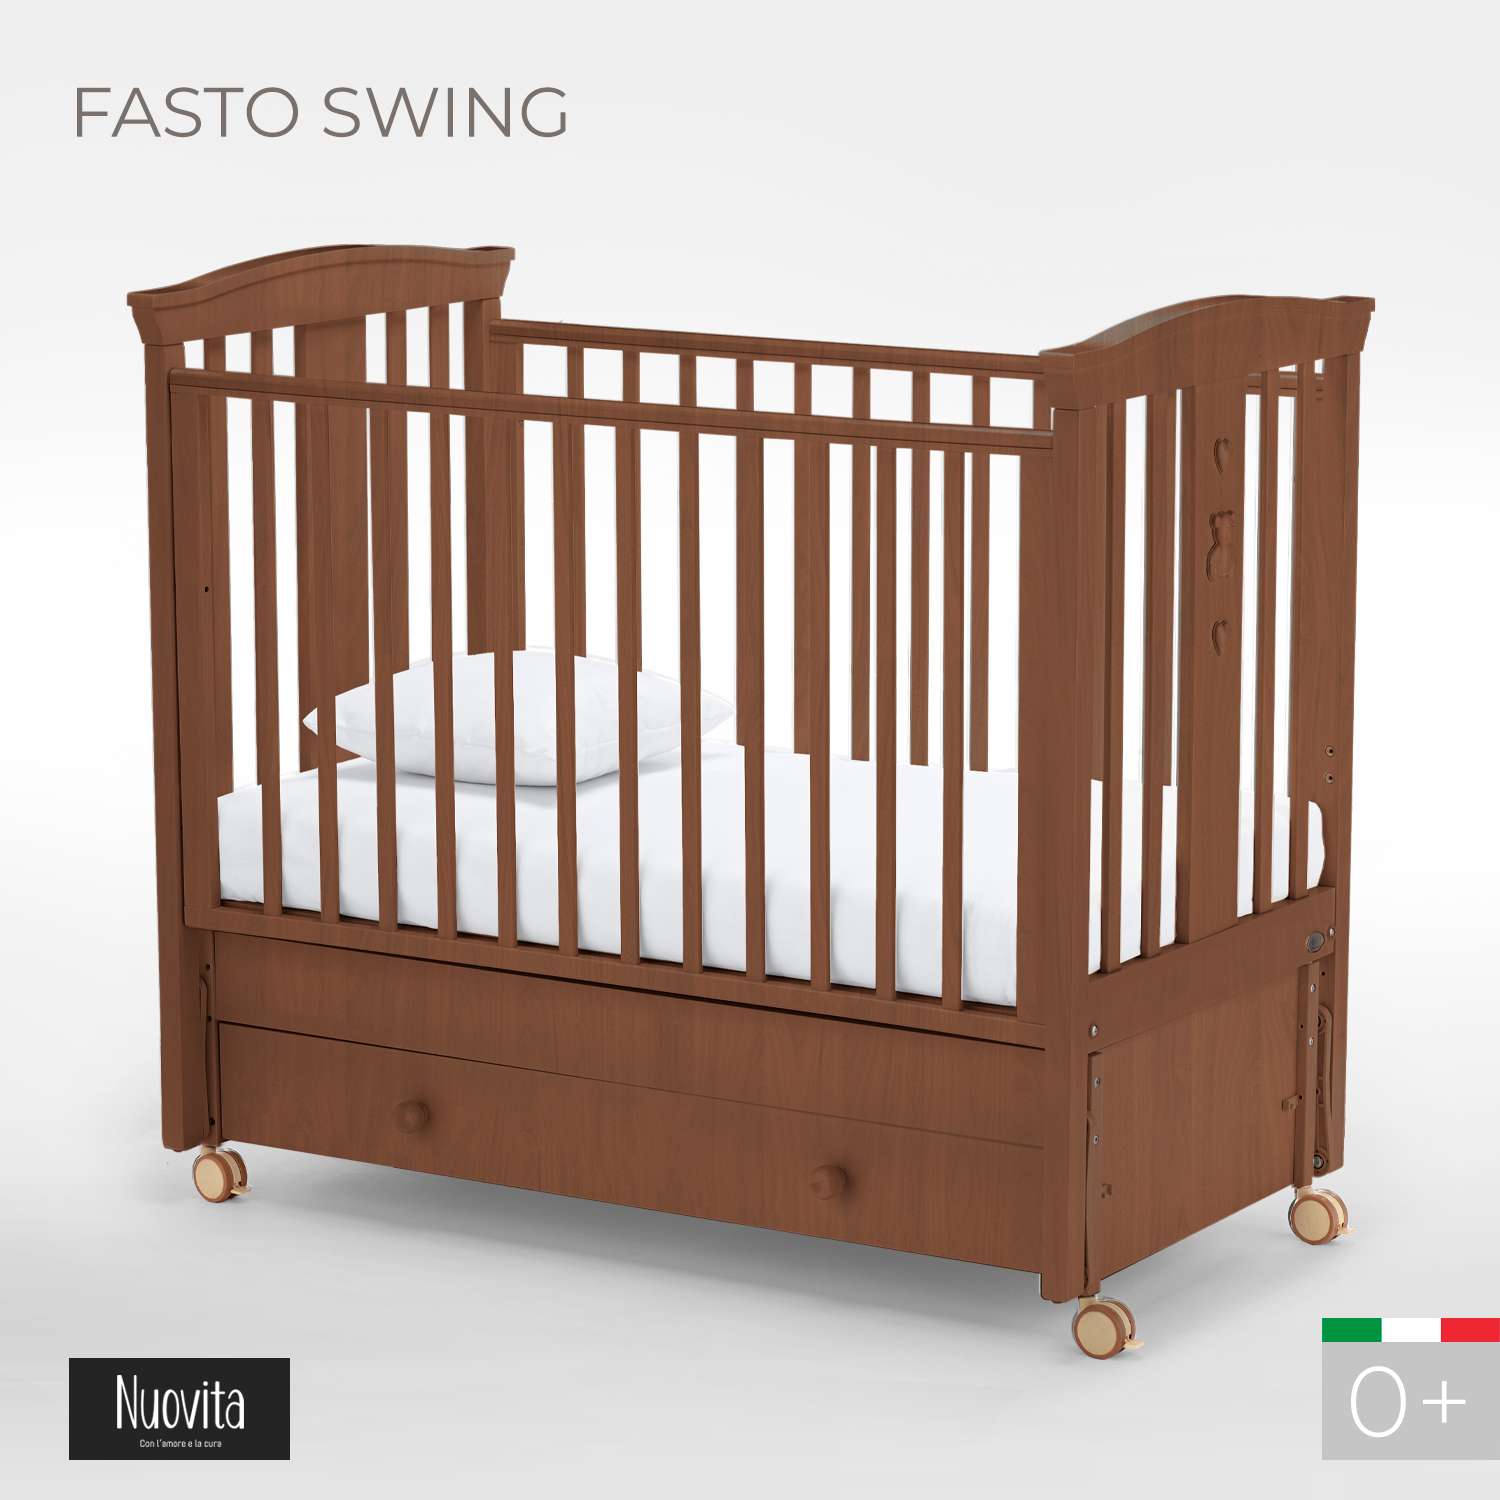 Детская кроватка Nuovita Fasto Swing прямоугольная, продольный маятник (темный орех) - фото 2